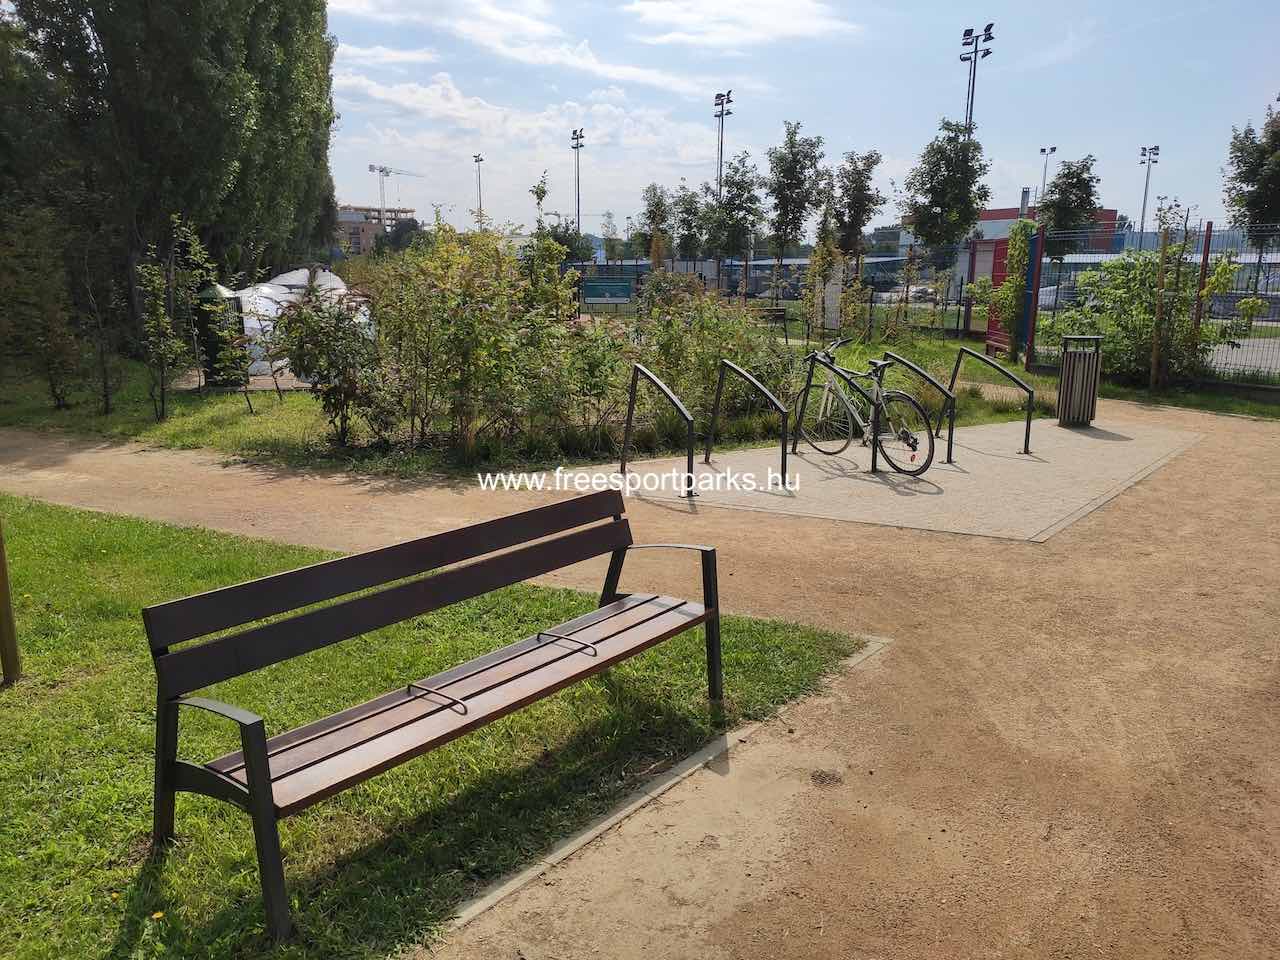 pihenőpad és kerékpártároló a kutyafuttató mellett - Rákos-patak - Free Sport Parks blog